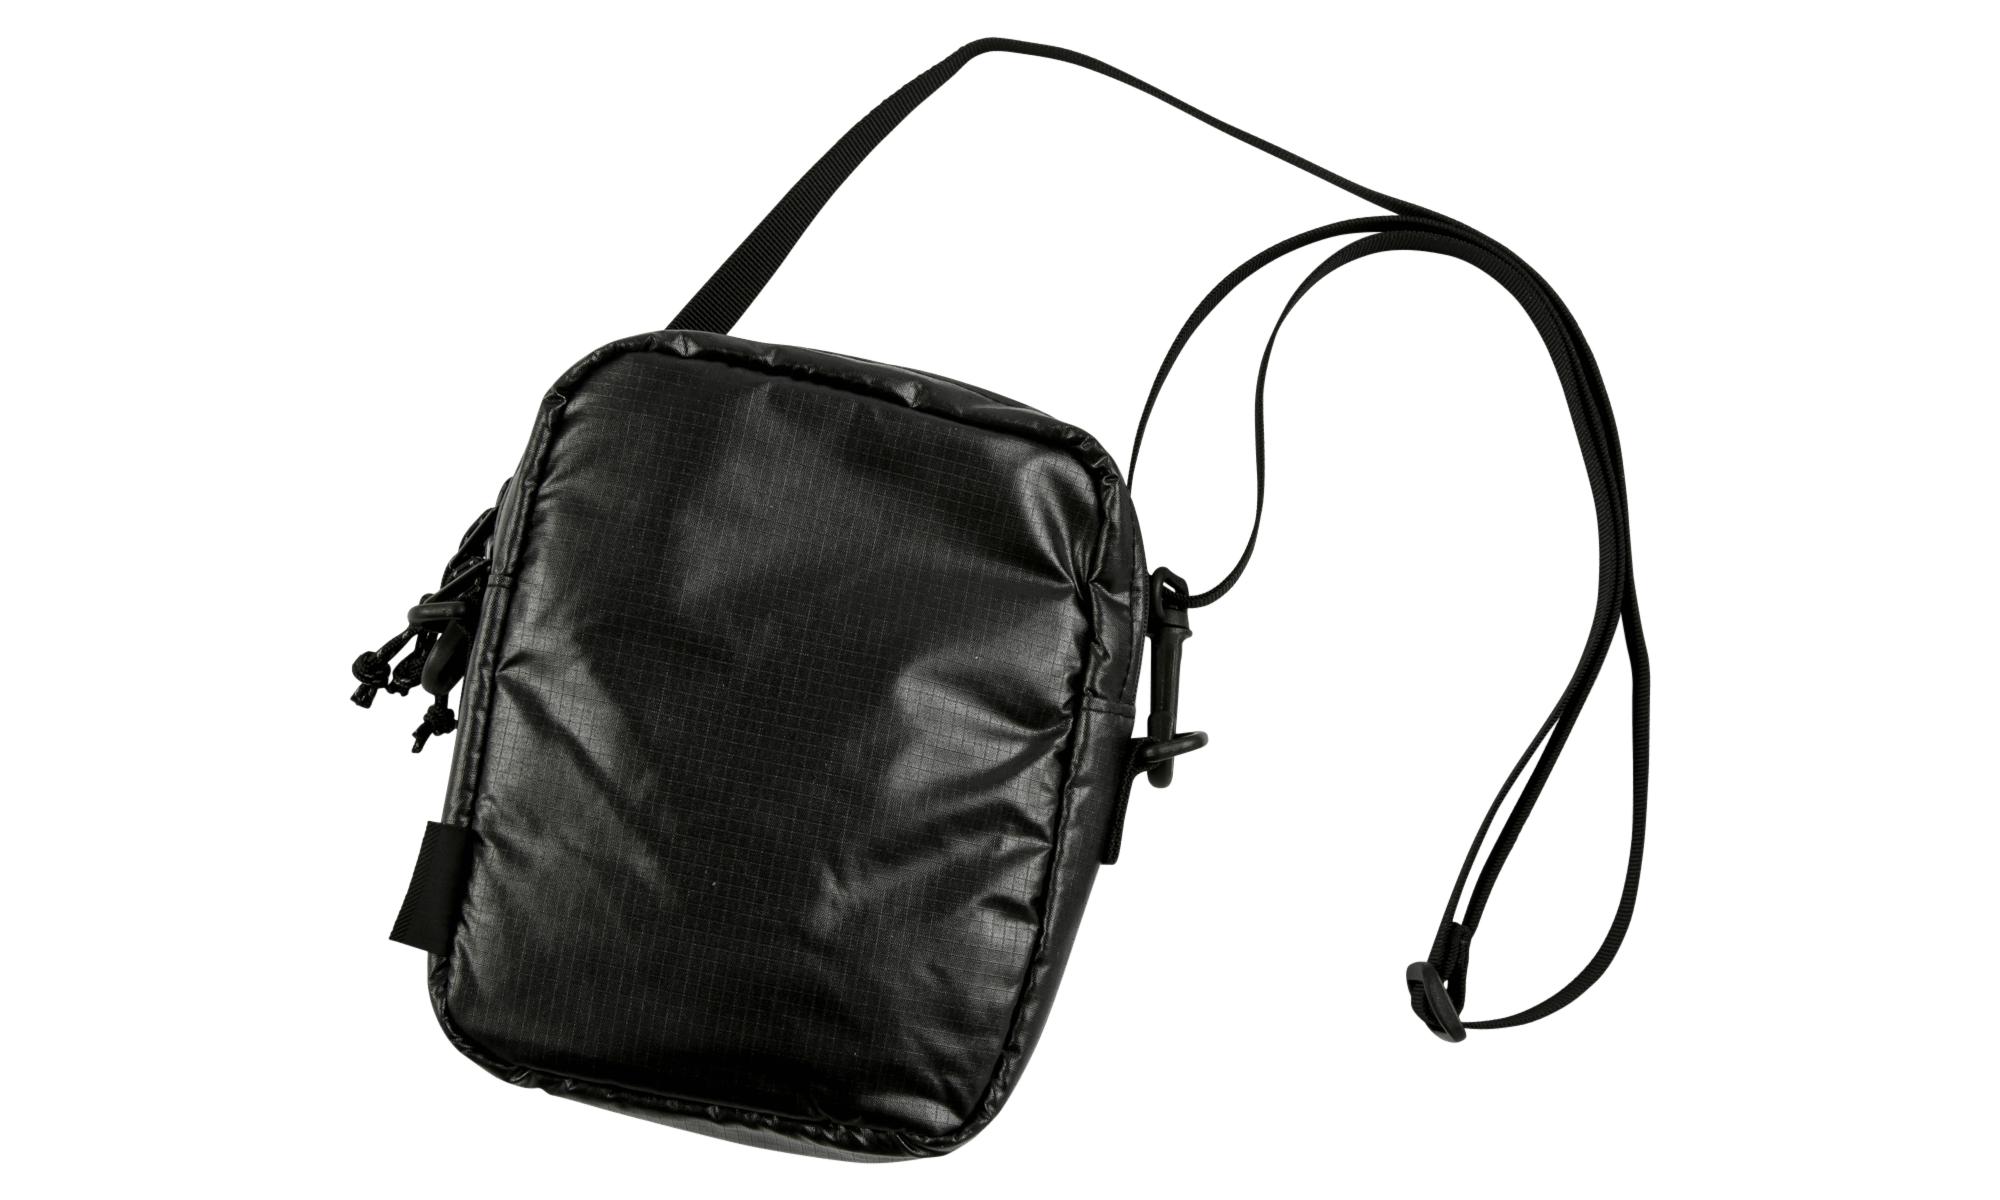 Lyst - Supreme Shoulder Bag in Black